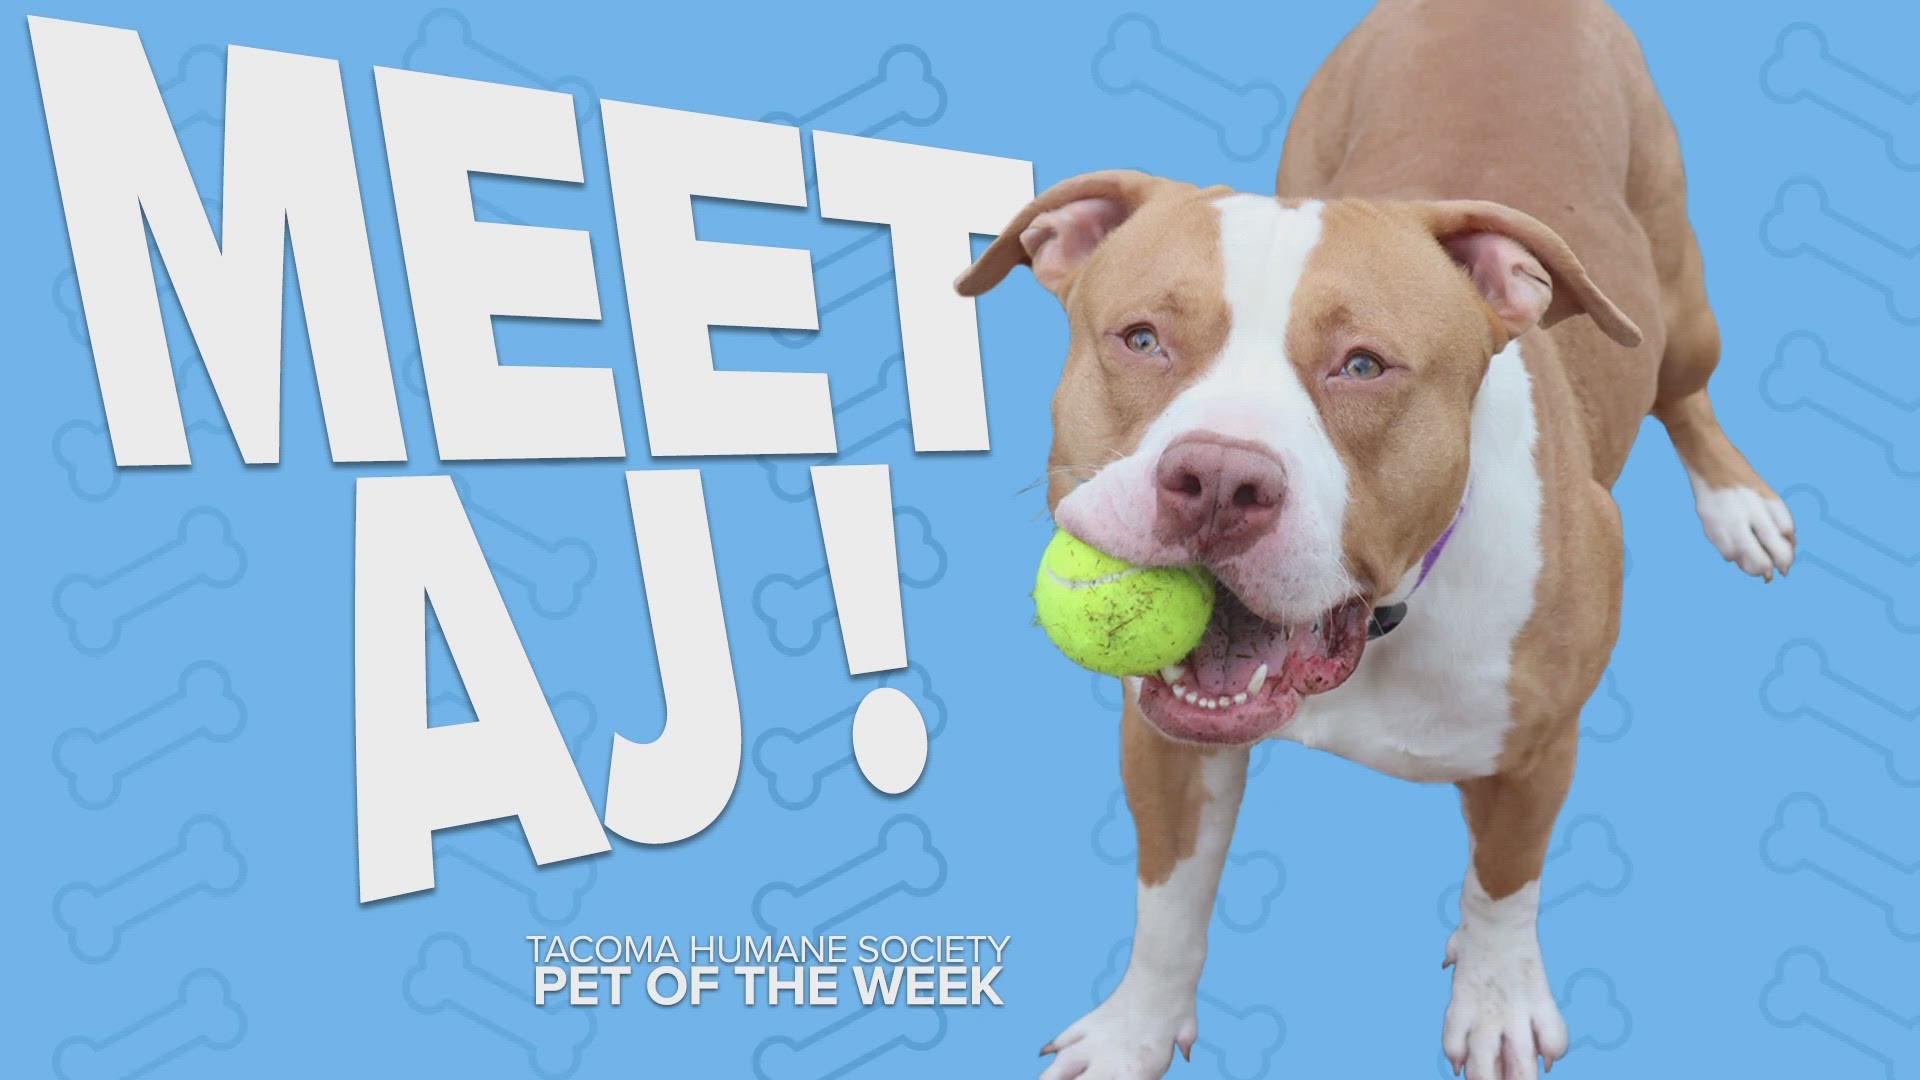 This week's adoptable pet of the week is AJ!